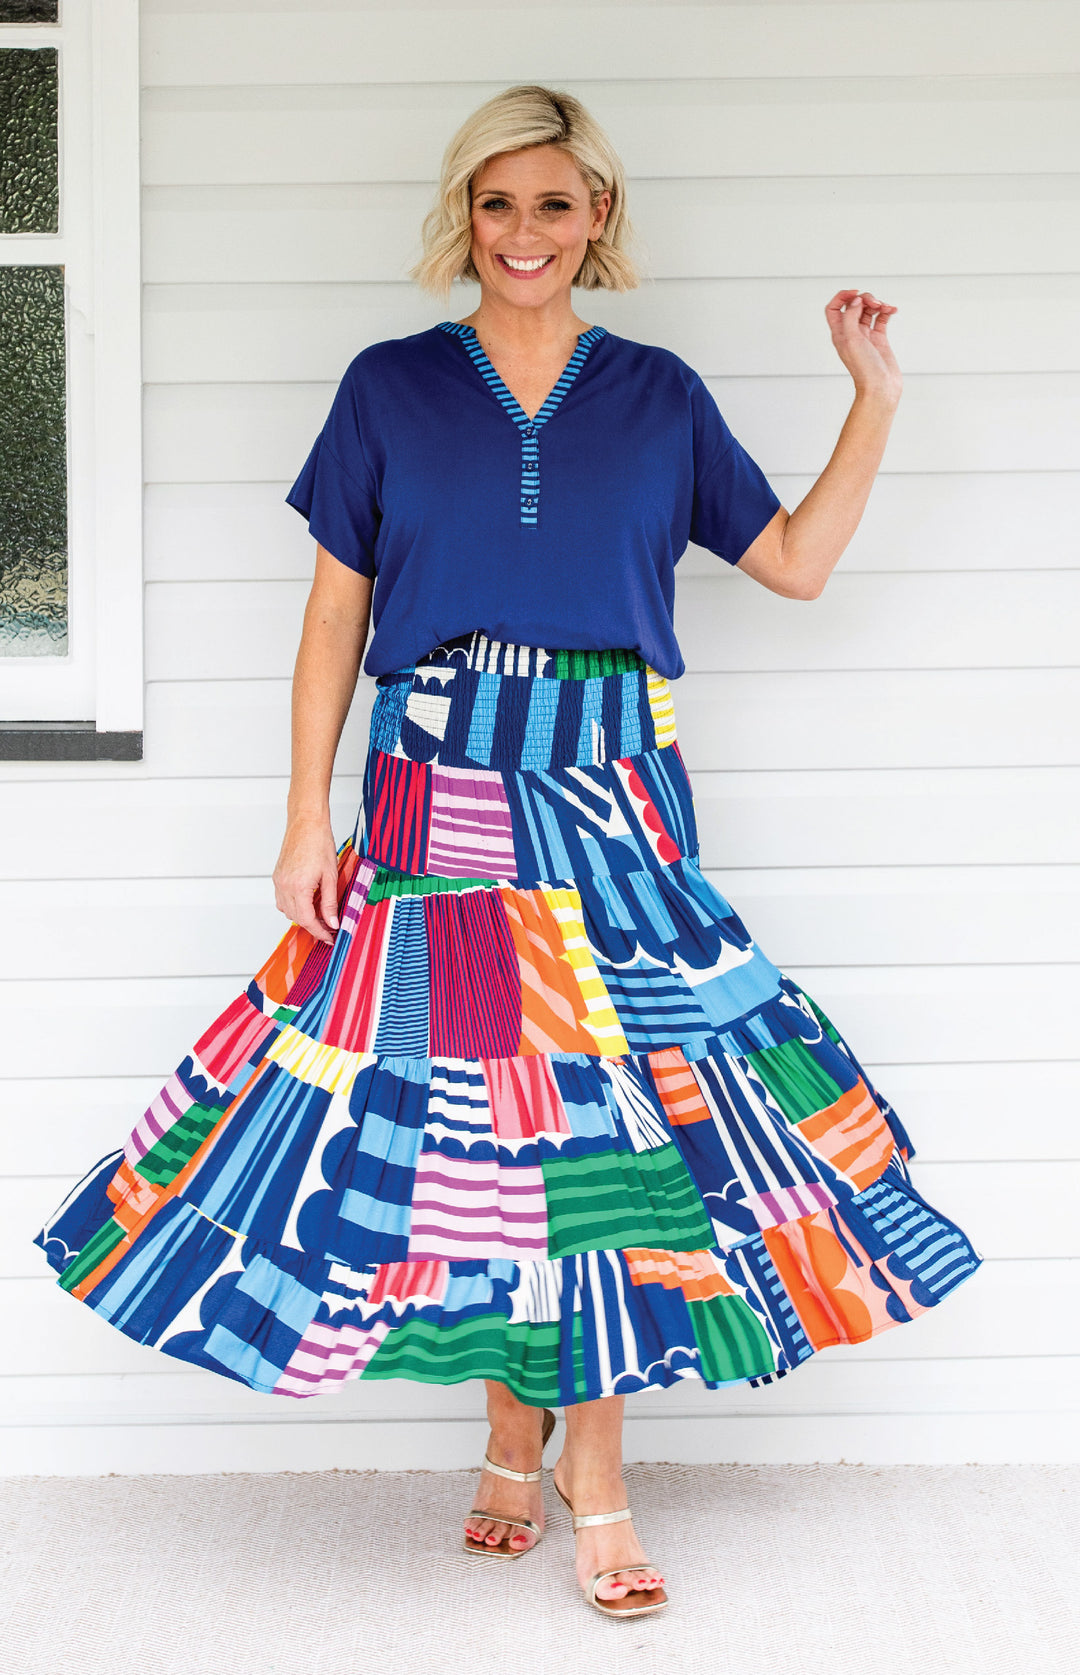 Florida Dress/Skirt in little wonder stripes